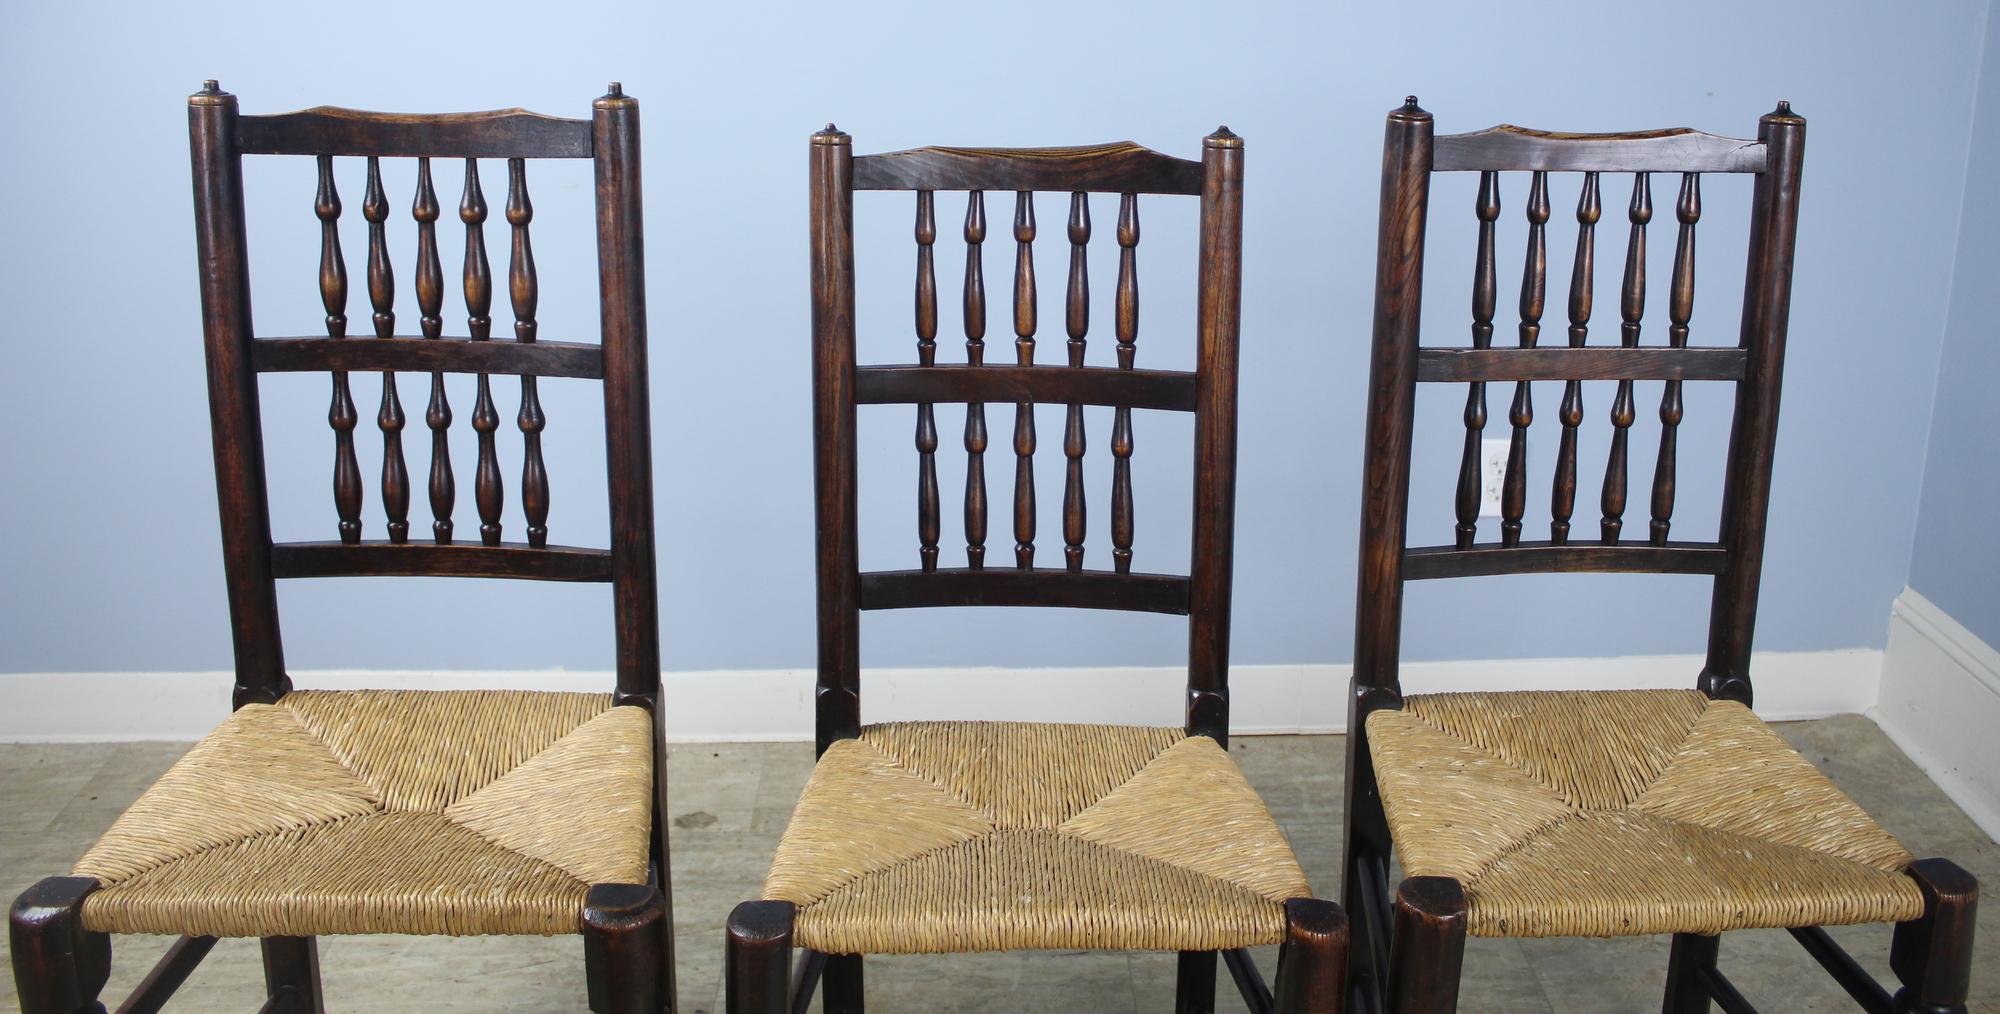 Une collection de 8 chaises de campagne à fuseau, avec une belle couleur et patine. Ils ont été fabriqués à la main et sont peut-être le résultat du mariage de deux ensembles différents du même fabricant. Les hauteurs de dossier et de siège, les